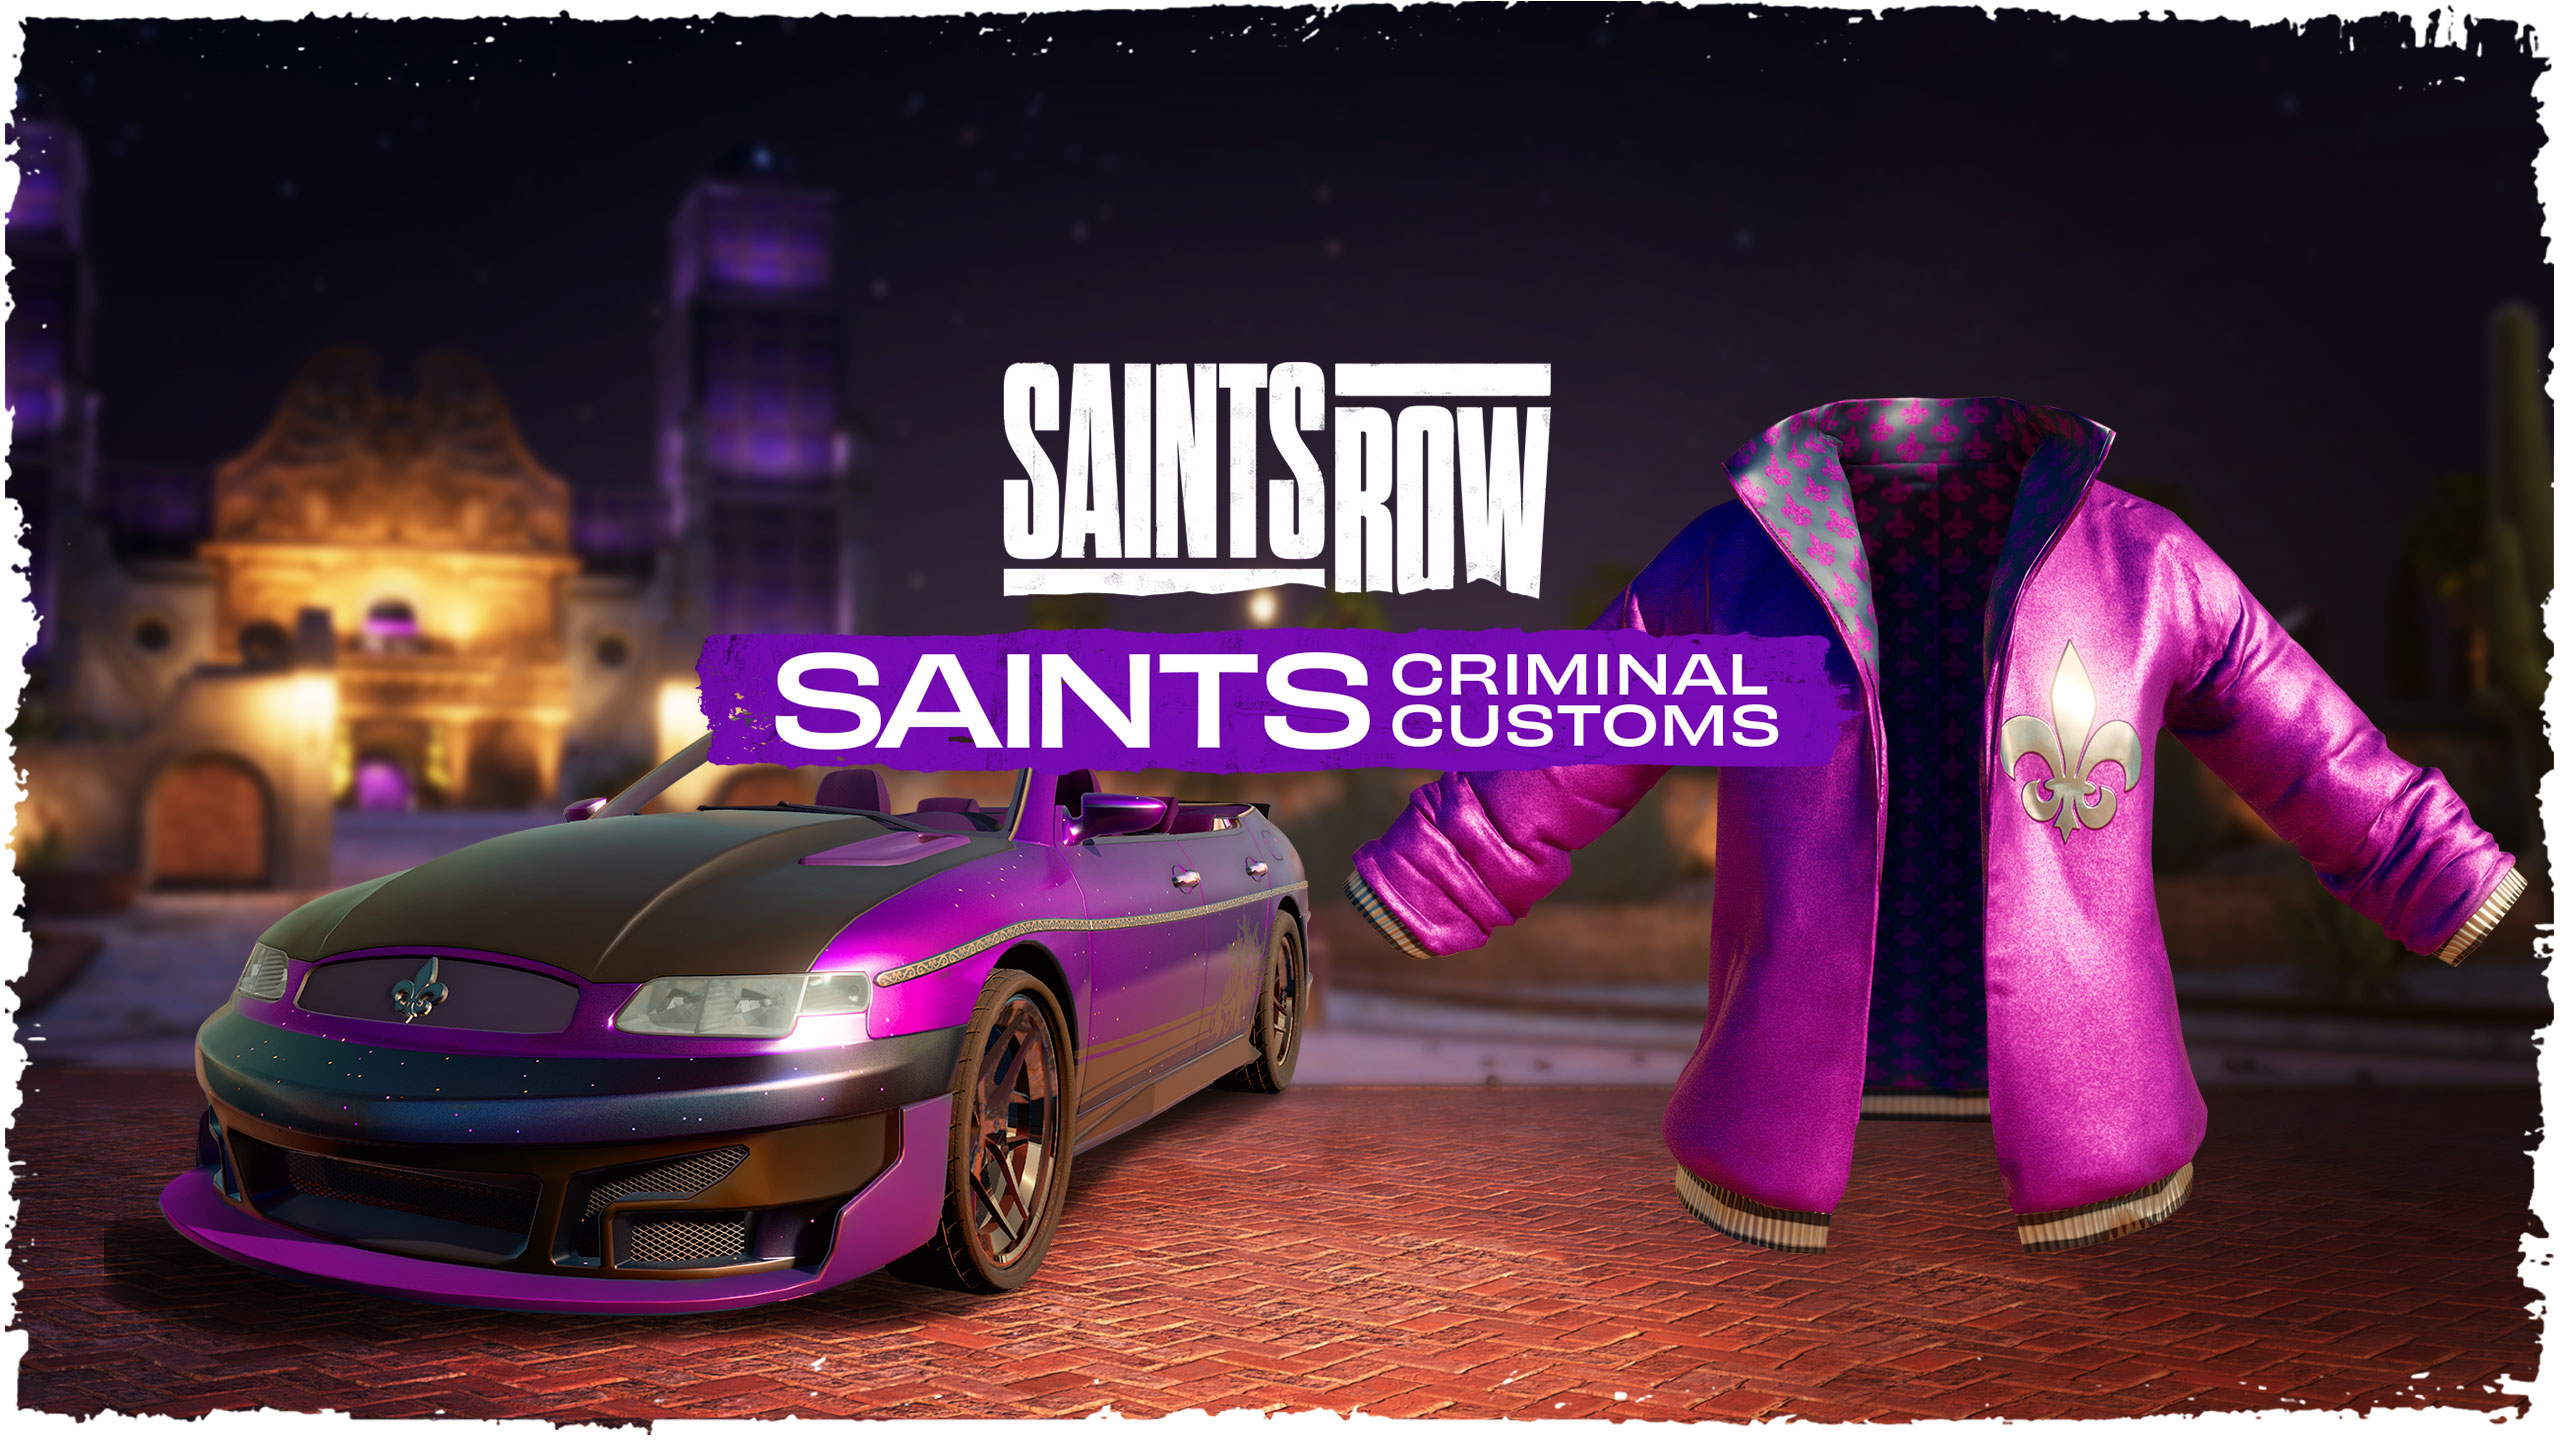 Saints Row Saints Criminal Customs Edition Epic Games CD Key, 68.2$